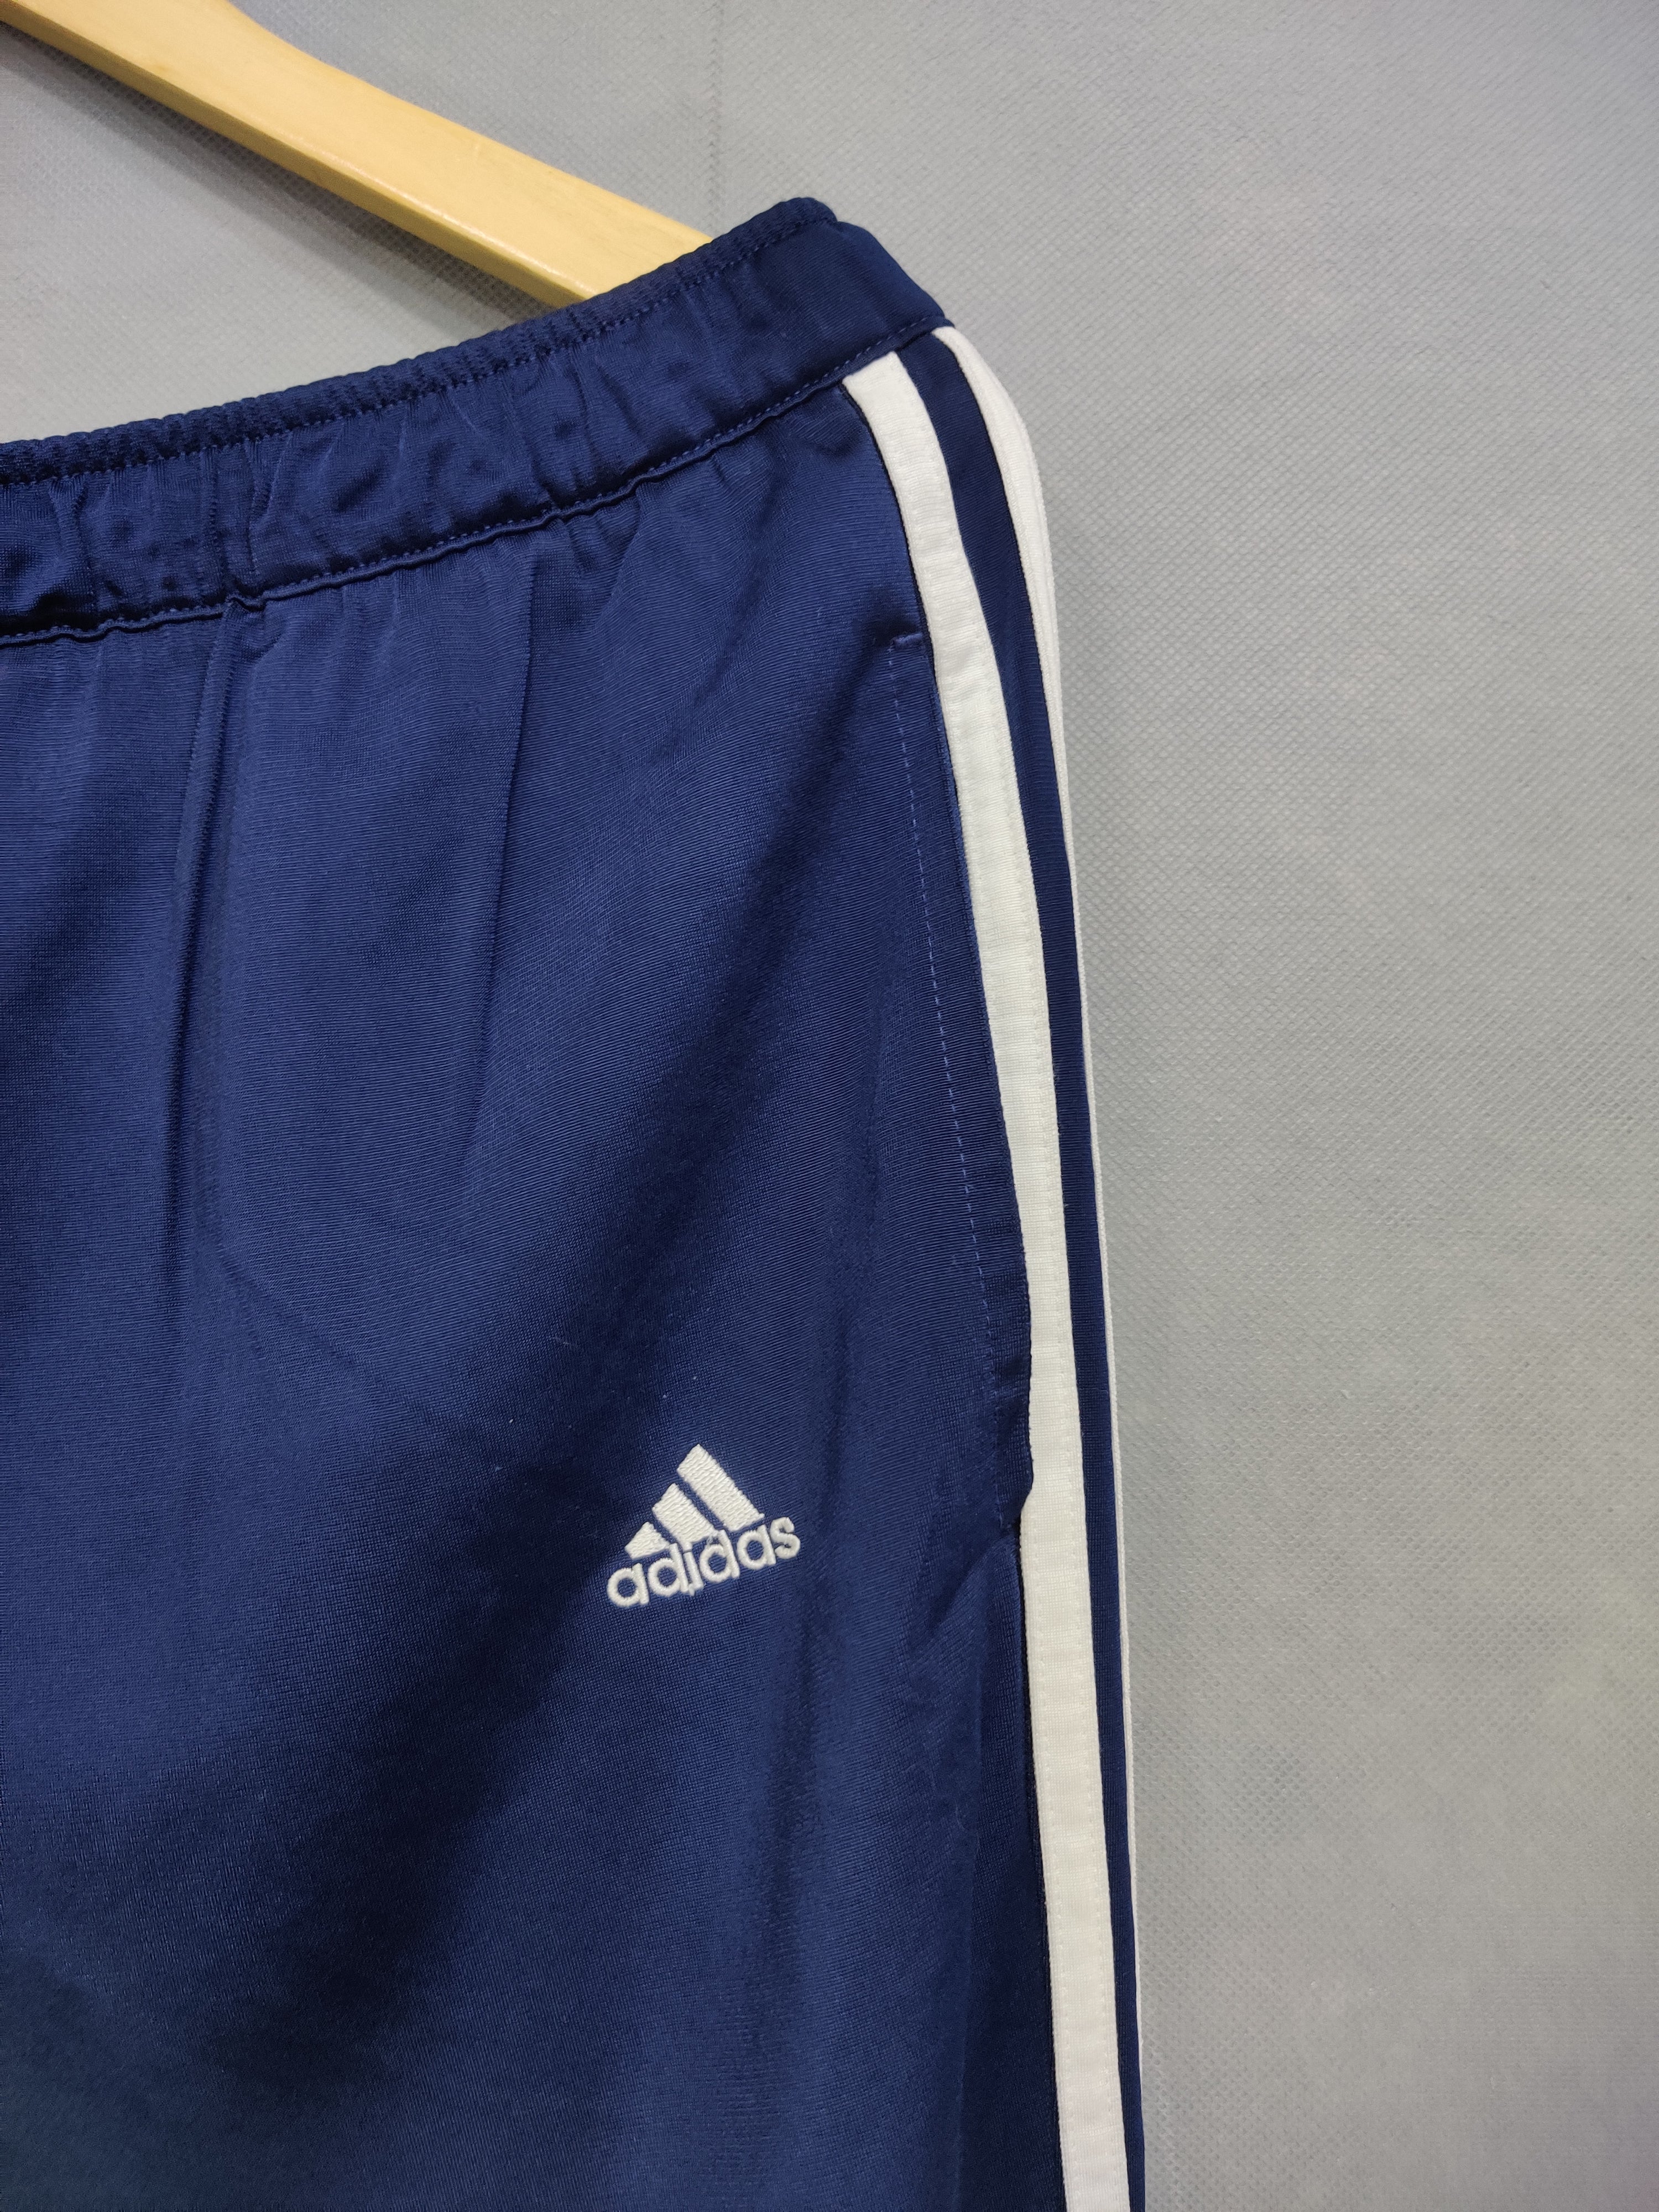 Adidas Branded Original Sport Trouser For Women